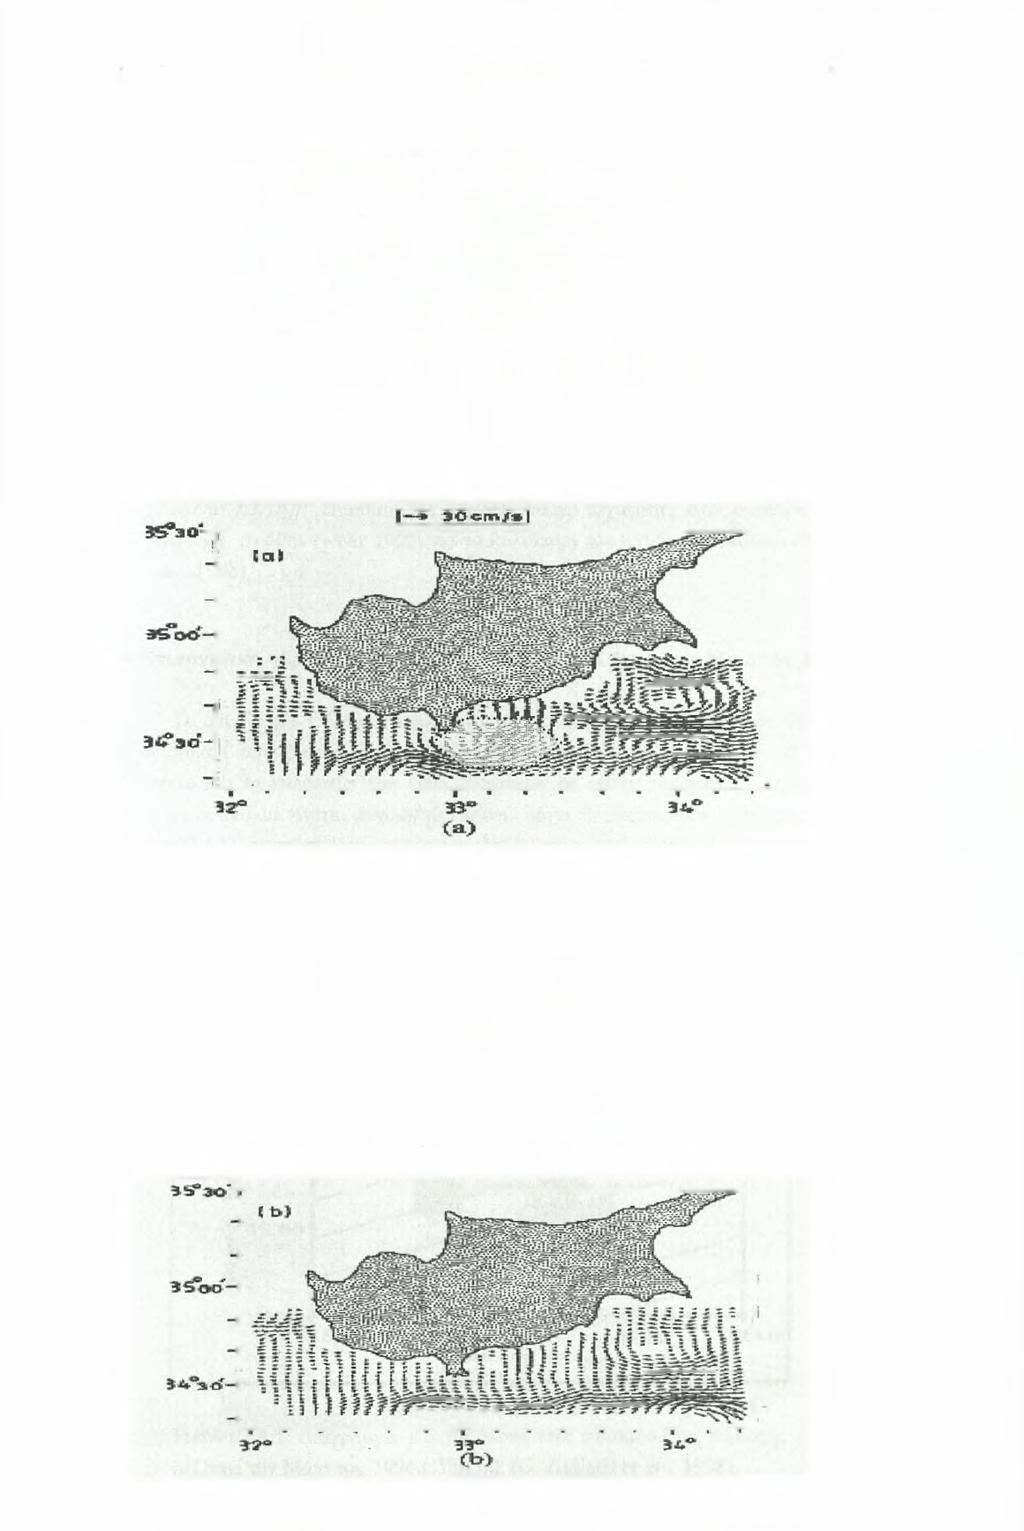 Κεφάλαιο 7- Υδοονοαωία και Κνκλοωοοία Νότια me Κύπρου (1995-1996) - 145 - υδάτινες μάζες MAW και LIW από την Δυτική πλευρά της Λεβαντινής λεκάνης στην περιοχή μελέτης.